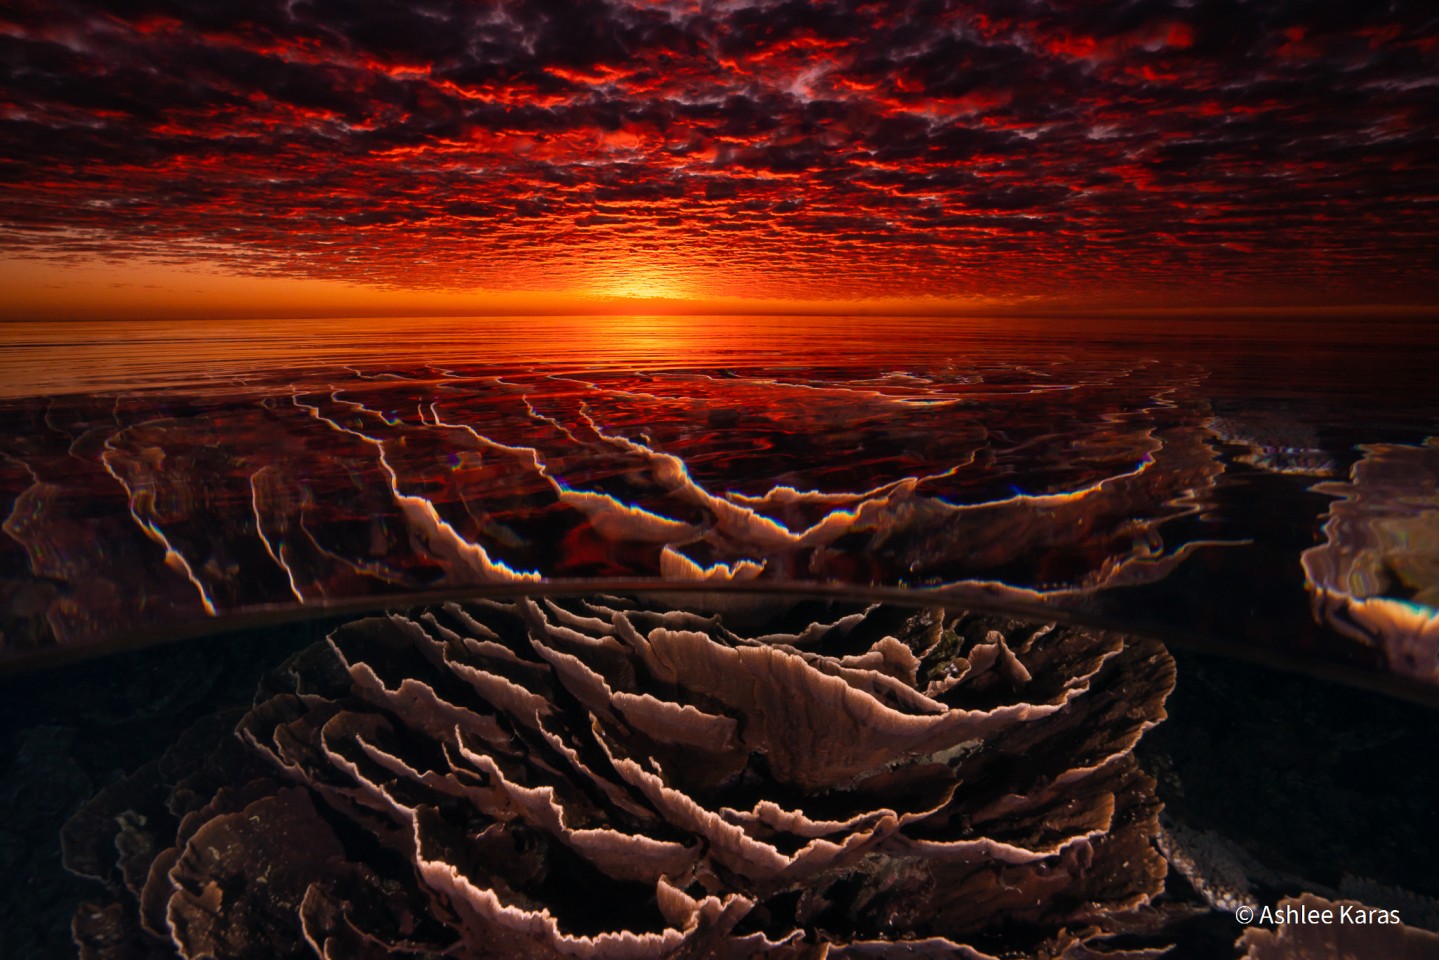 Второе место - Пейзаж. "Под поверхностью". Риф Нингалу, Коралловый залив, штат Западная Австралия, Австралия. Фото: Ashlee Karas